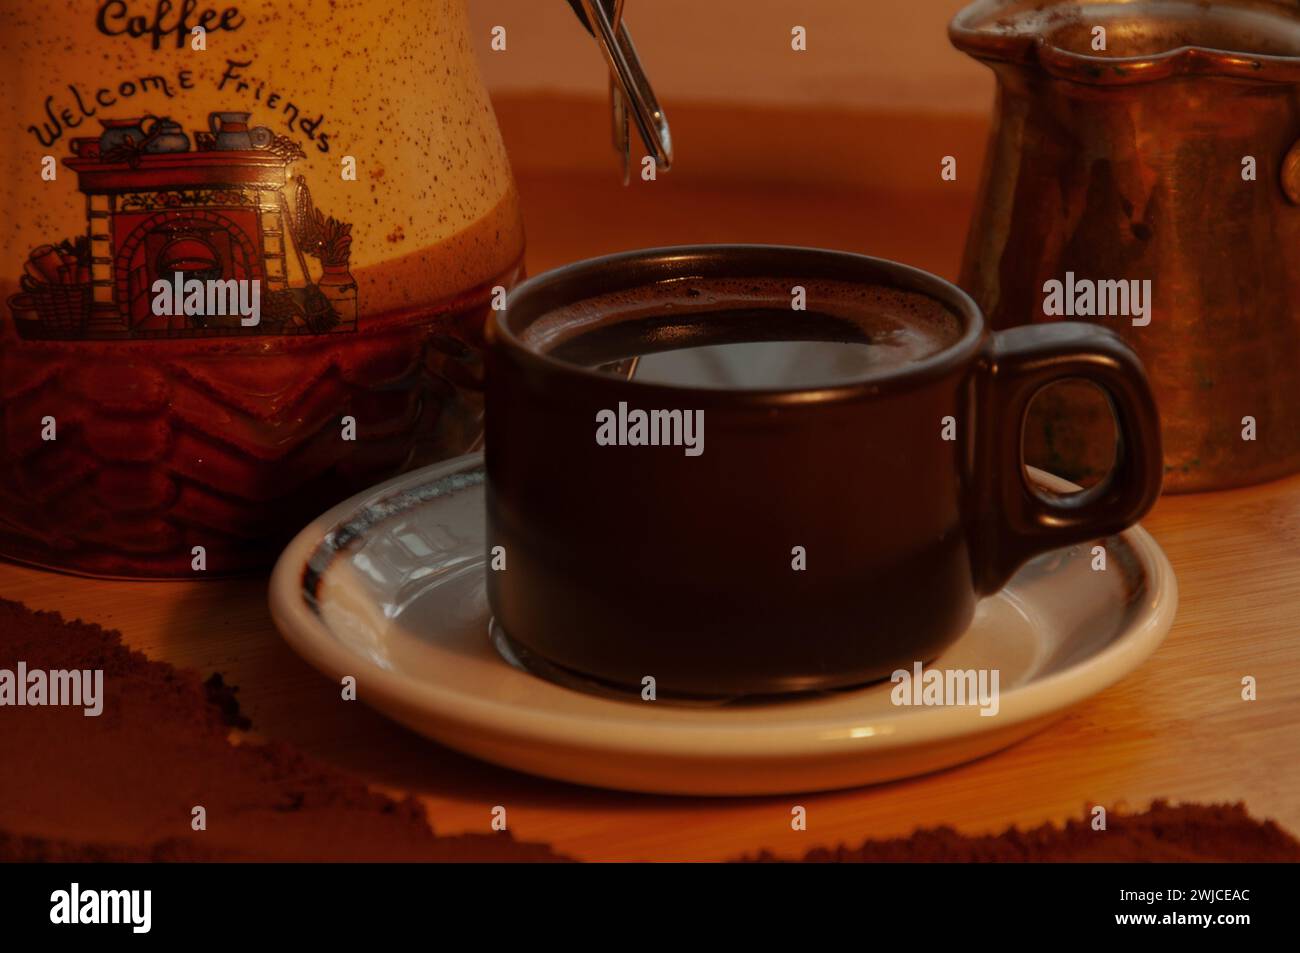 Albanischer Kaffee Stockfoto